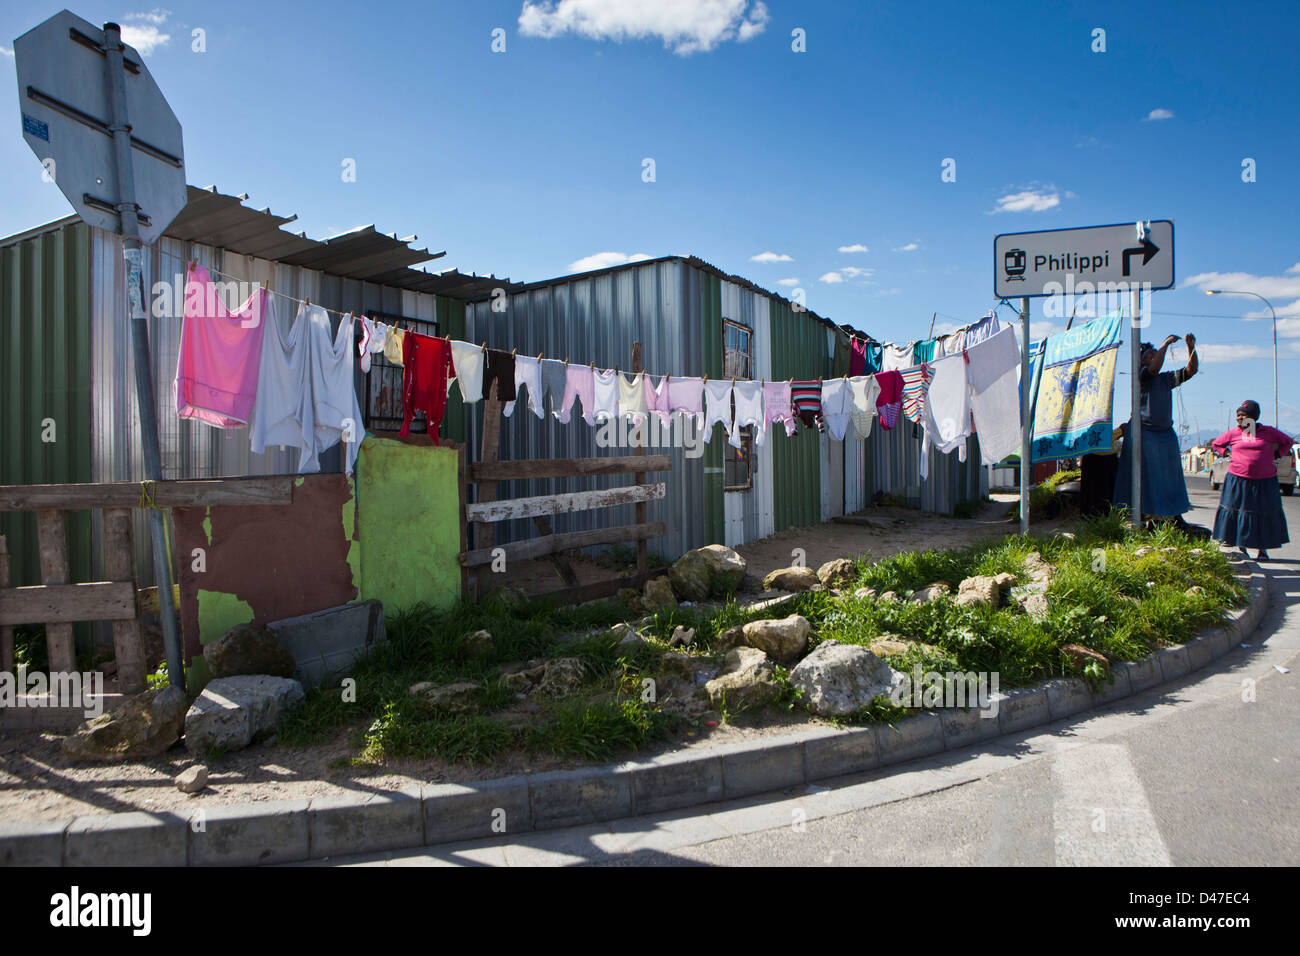 Femme et le lavage à Philippes township de Cape Town, Afrique du Sud. L'un des plus grands bidonvilles et l'habitat de milliers dans la pauvreté. Banque D'Images